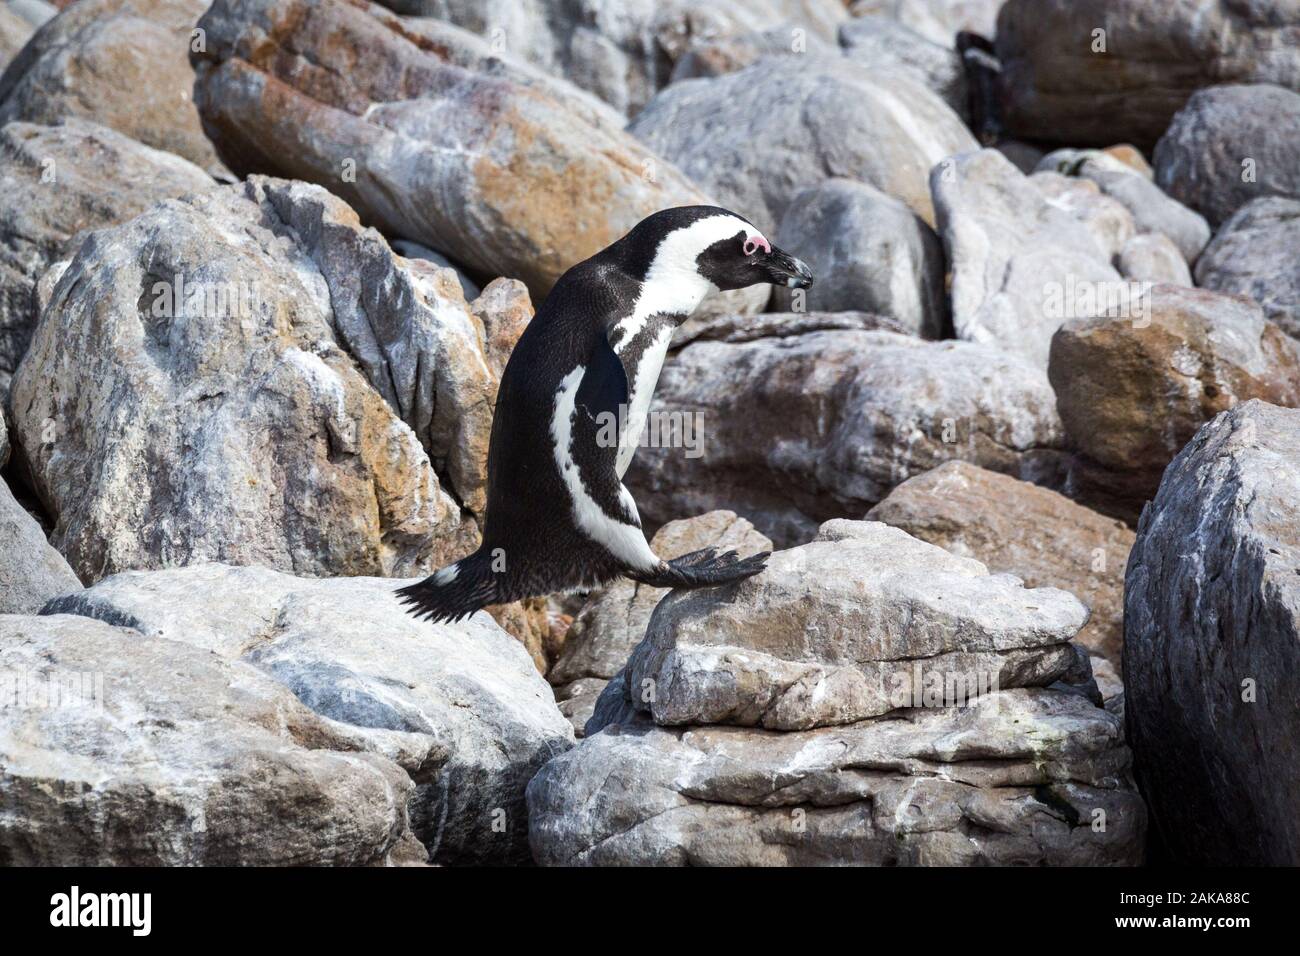 De pingüinos africanos (Spheniscus demersus) acaba de aterrizar en una piedra tras un salto grande, Betty's Bay, Sudáfrica Foto de stock